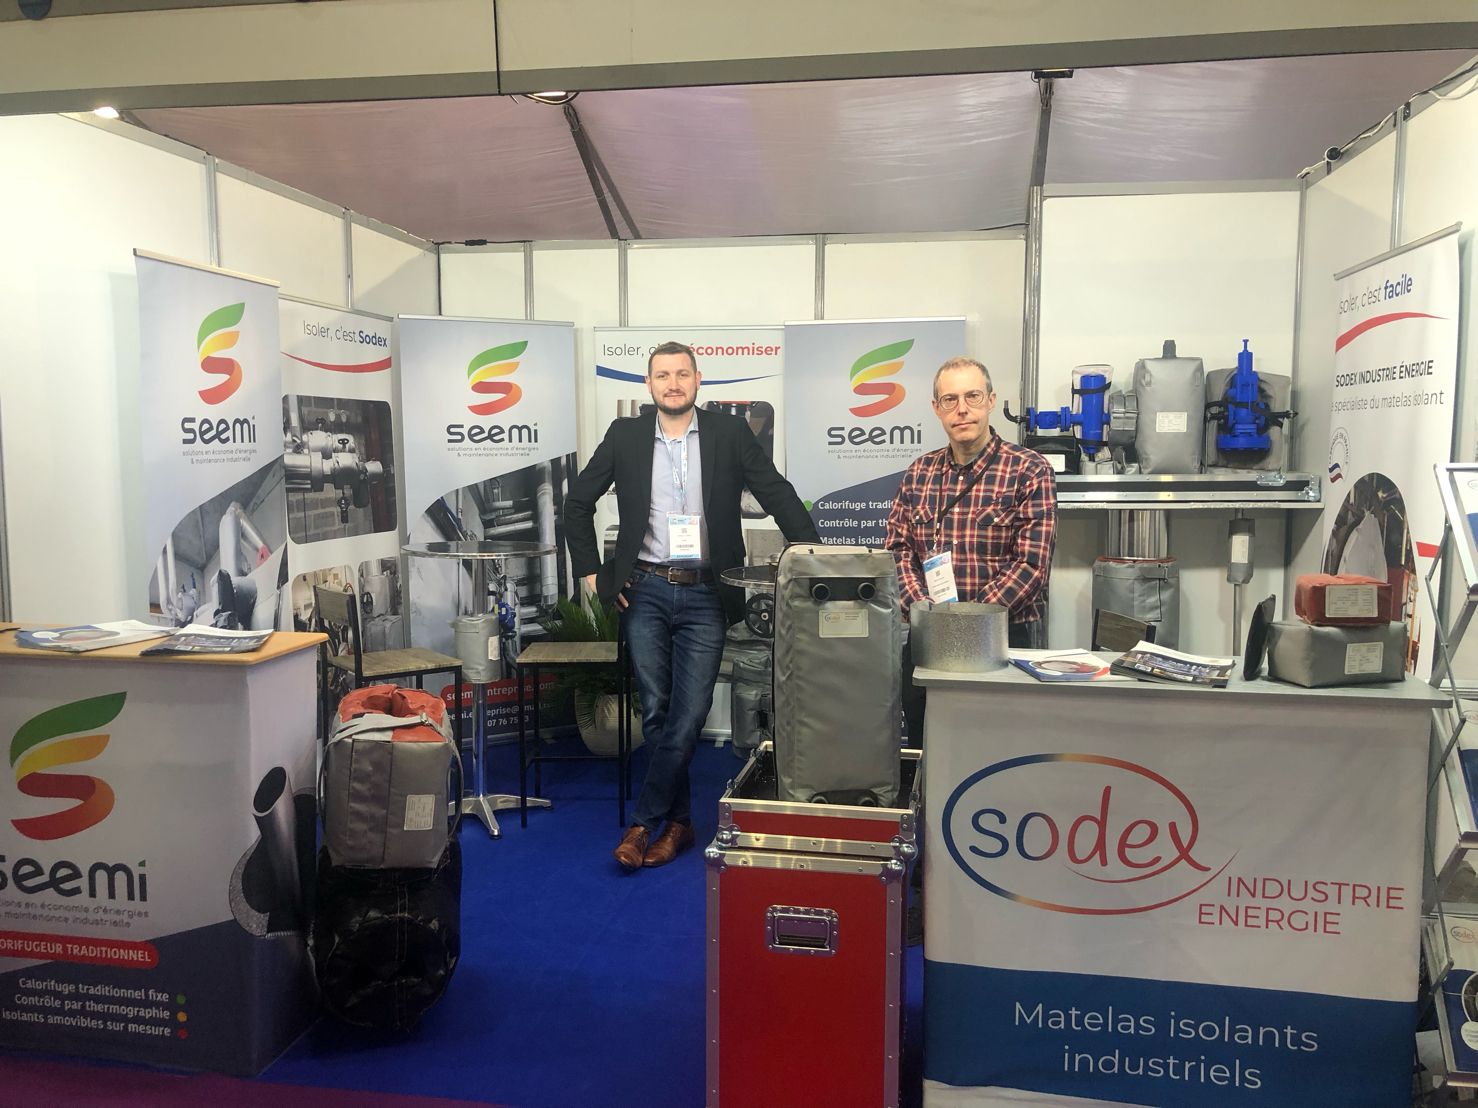 Trưng bày sản phẩm cách nhiệt công nghiệp Sodex tại Rennes Pháp